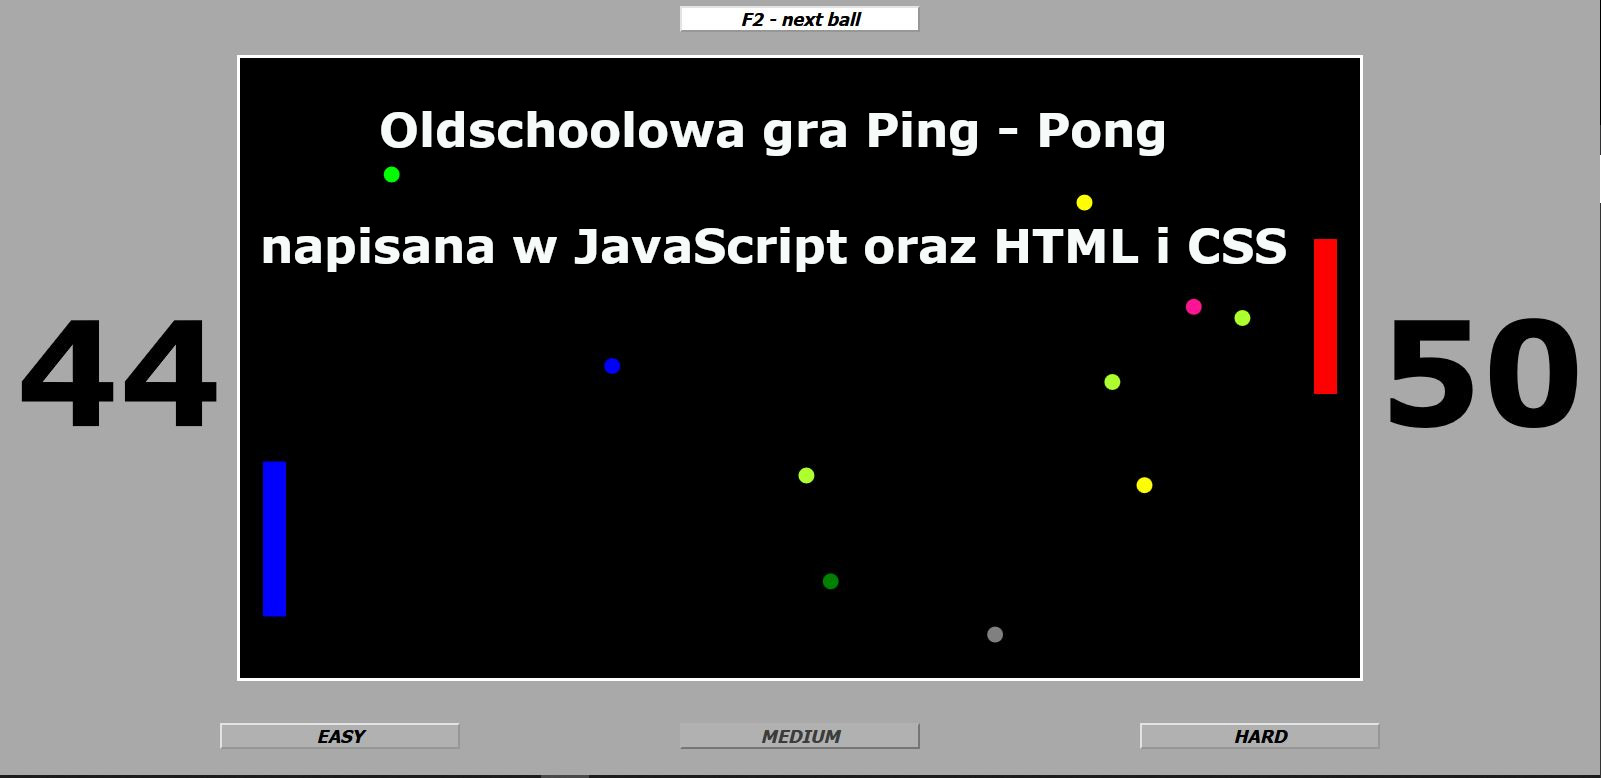 Stara gra PingPong zmodyfikowana, napisana w JavaScript oraz HTML, CSS